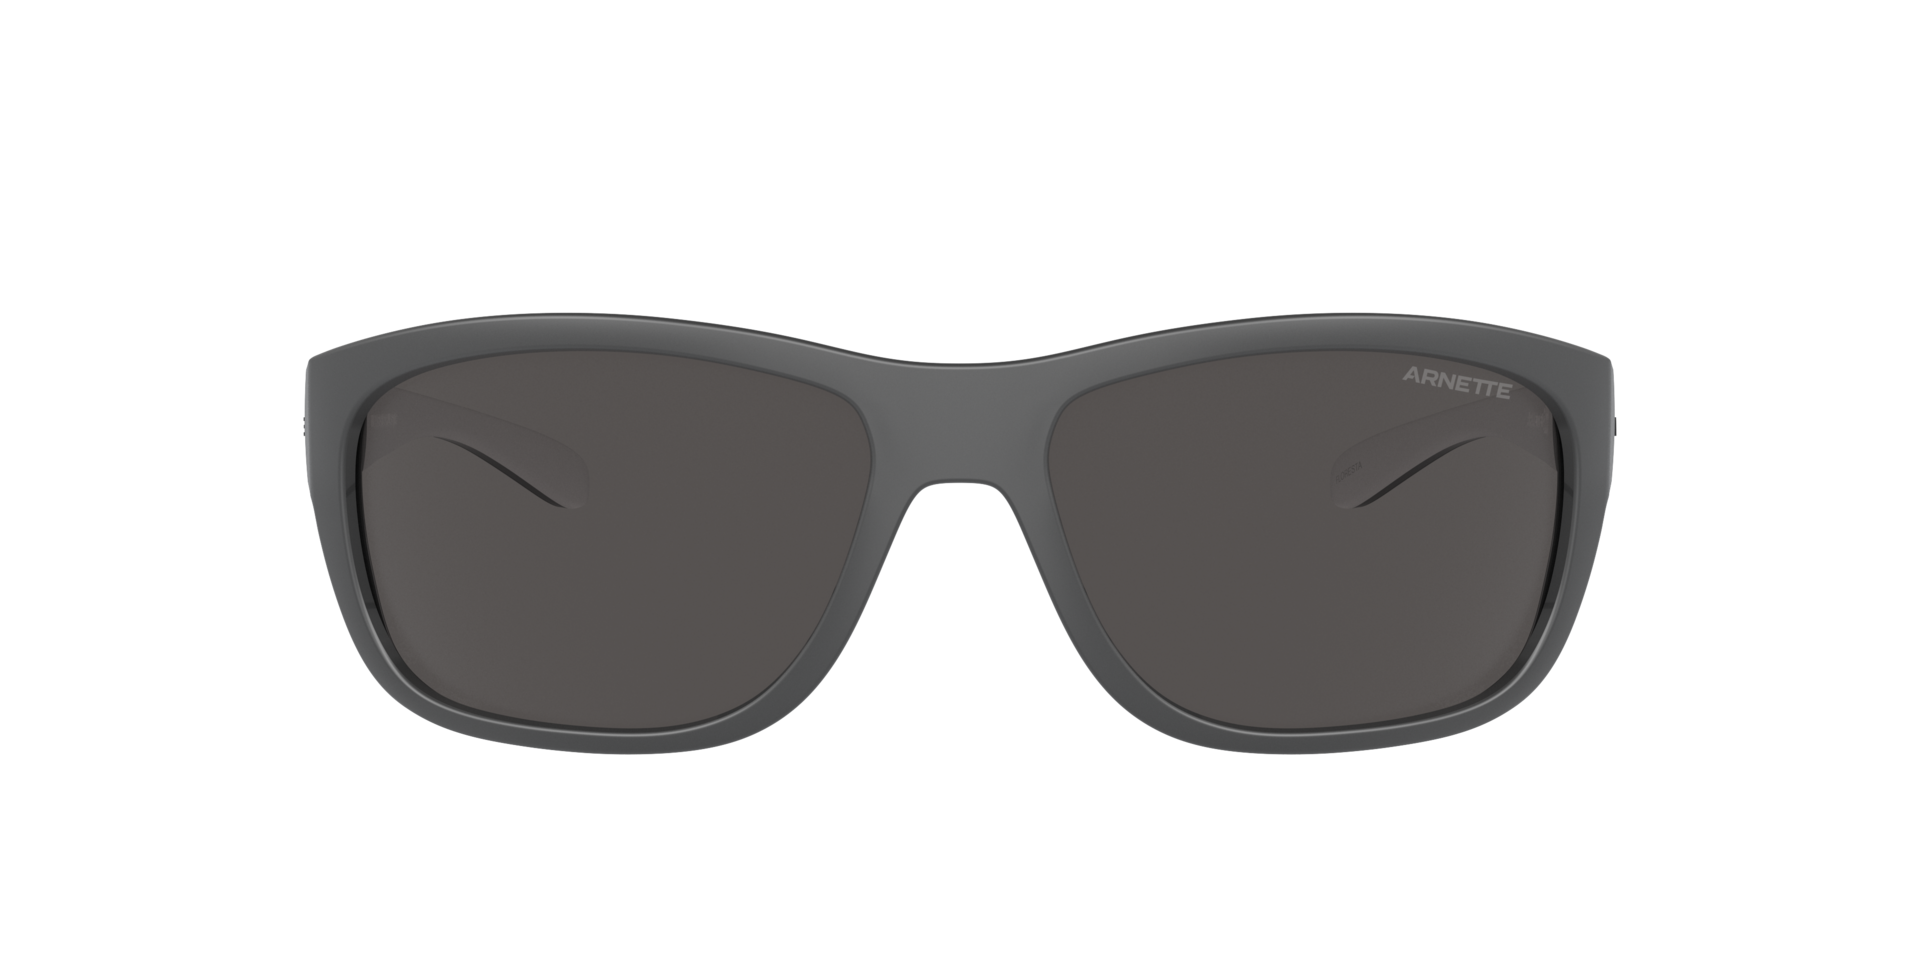 Das Bild zeigt die Sonnenbrille AN4337 275422 von der Marke Arnette in schwarz/weiß.